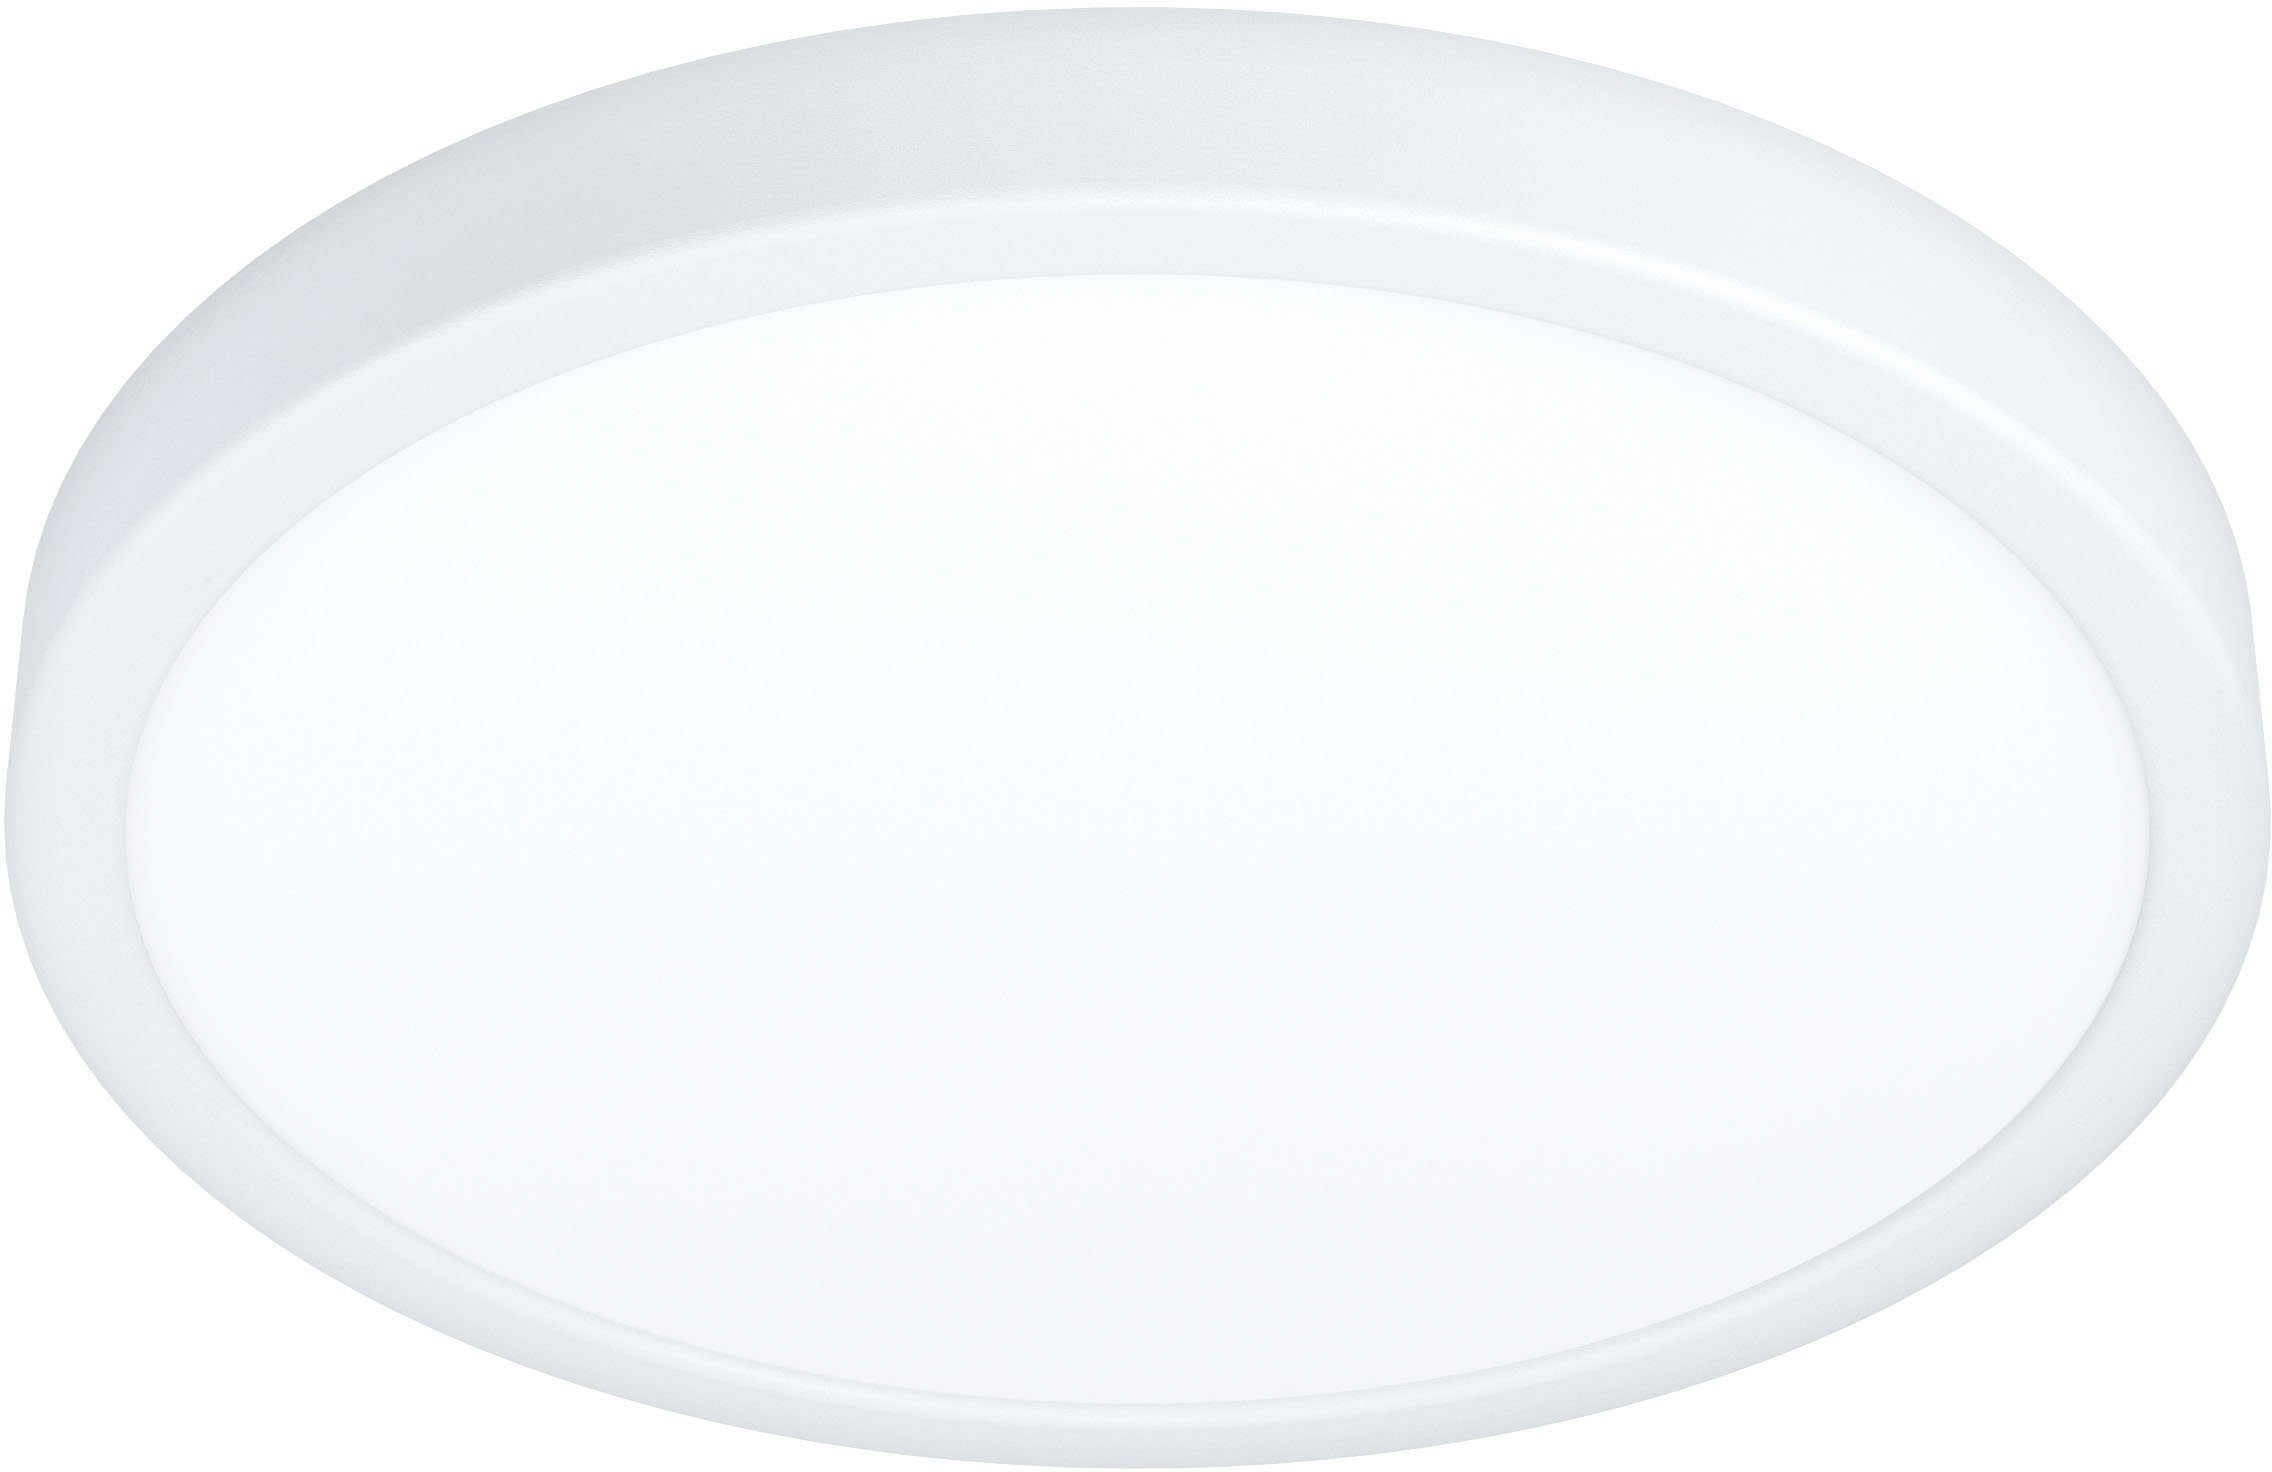 EGLO Deckenleuchte FUEVA 5, LED fest integriert, Neutralweiß, Ø 28,5 cm, Deckenlampe, Badezimmer Lampe, LED Aufbaulampe, IP44